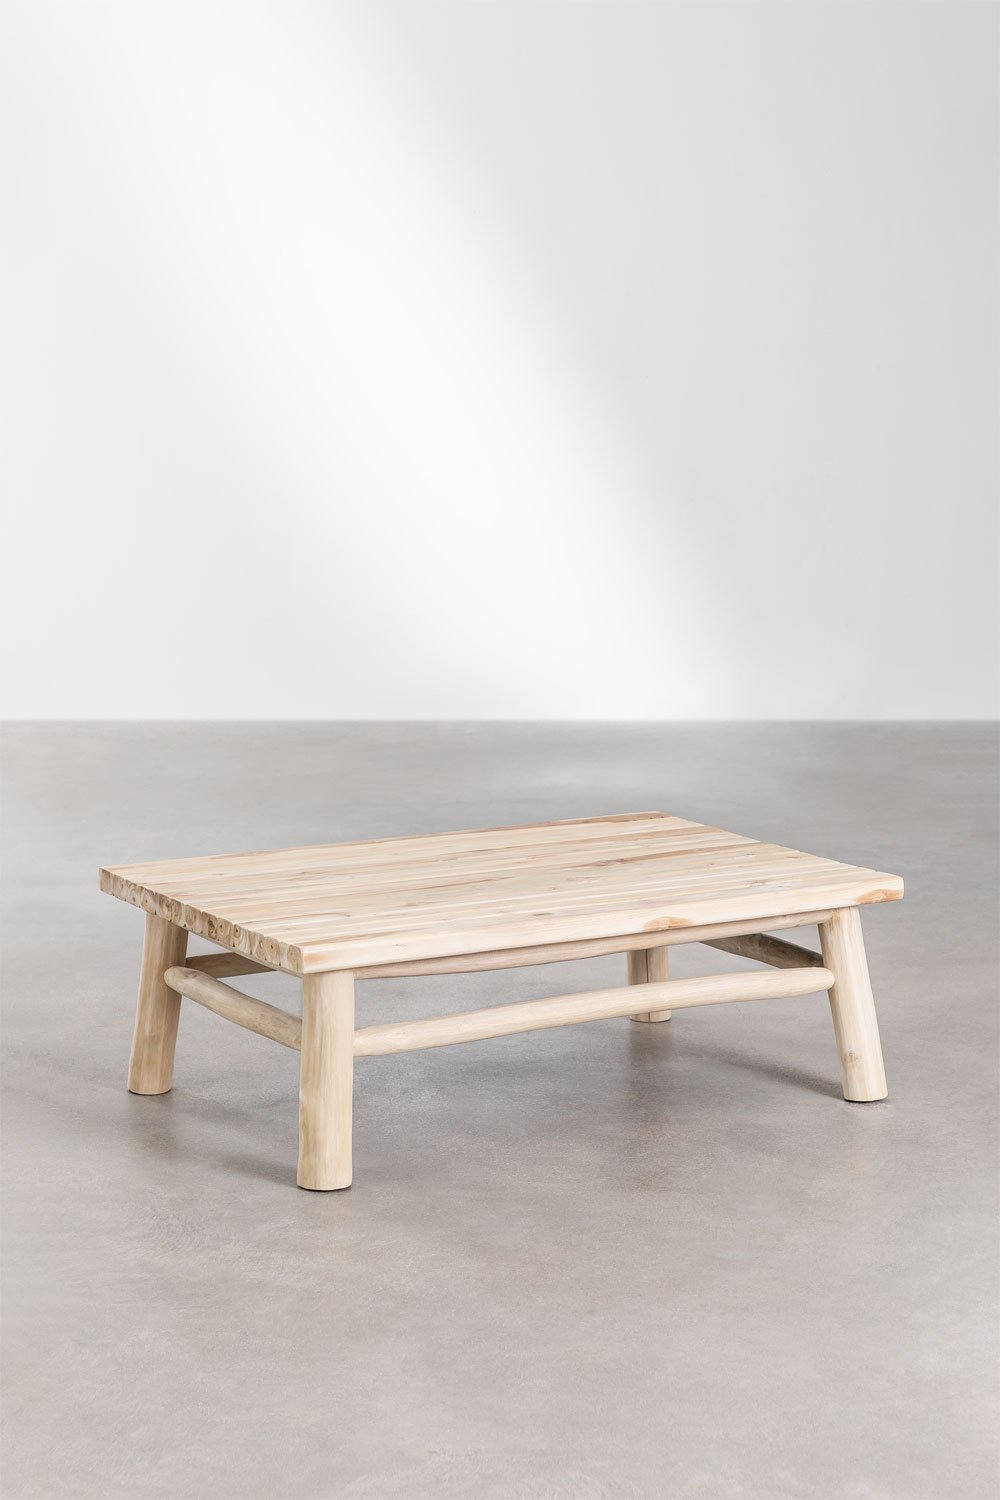 Tavolino Rettangolare in Legno di Teak (120x80 cm) Narel, immagine della galleria 1